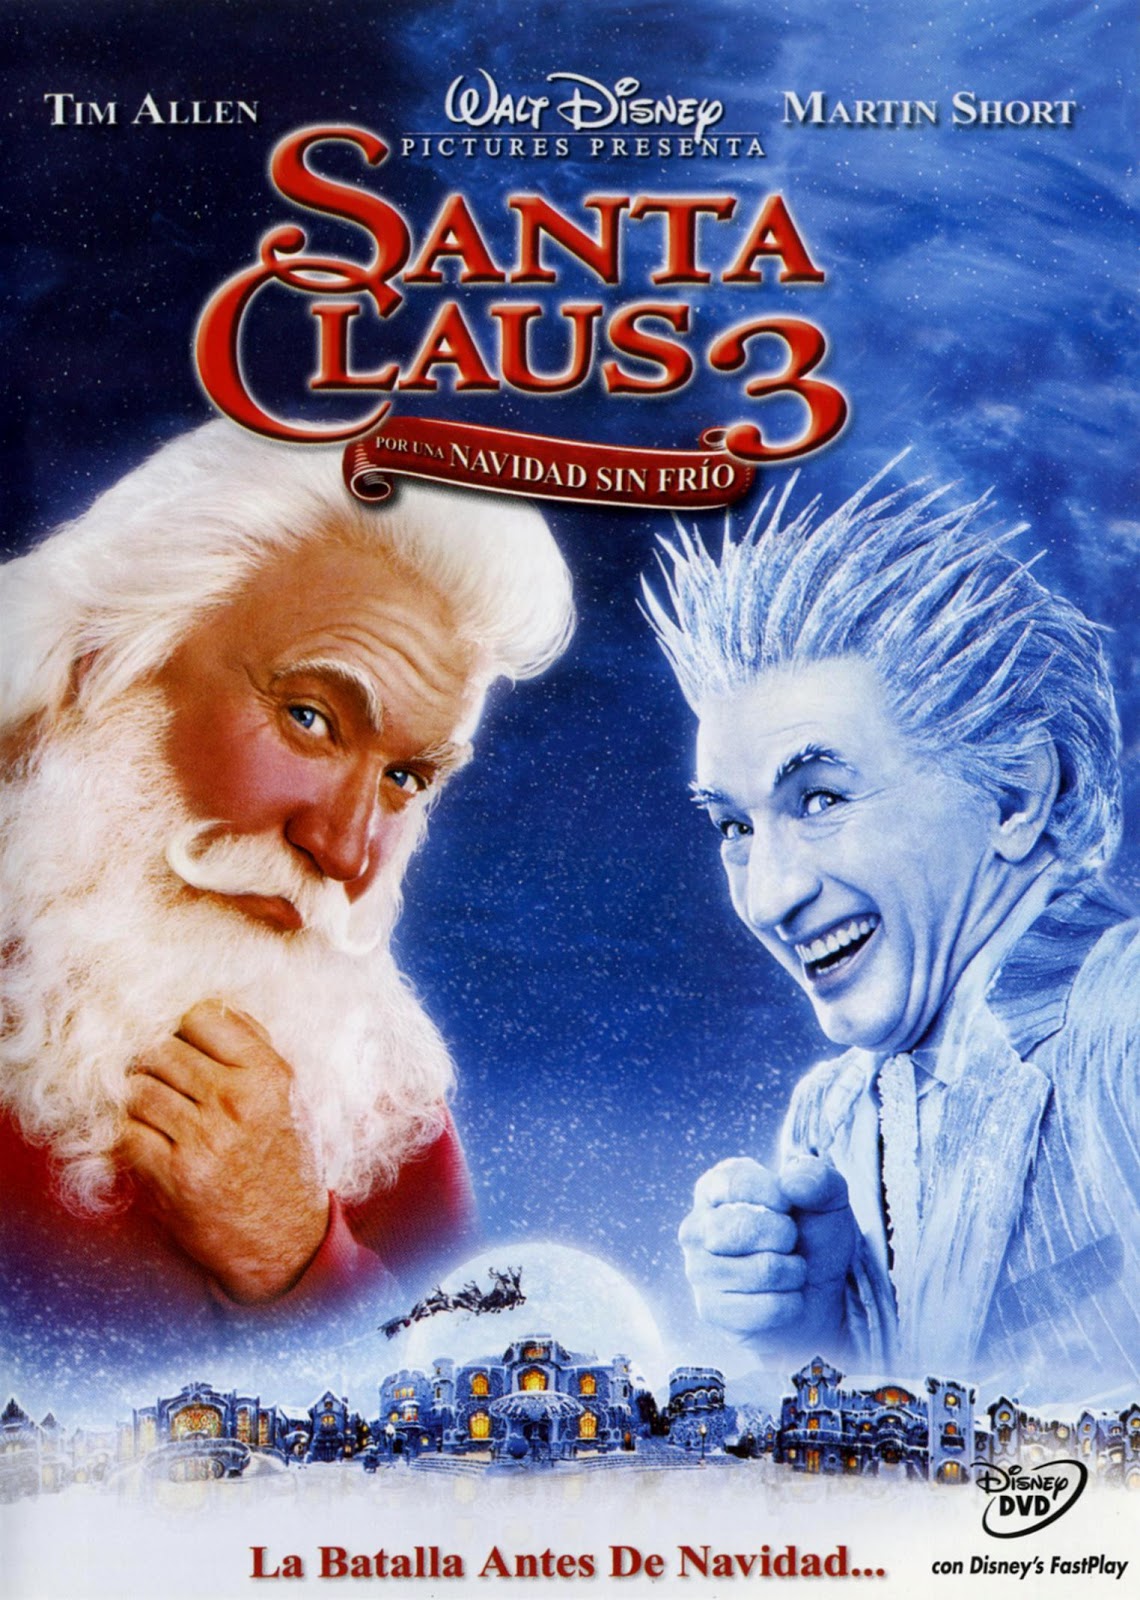 No lo hagas Sur oeste Nuclear TÓMBOLA DISNEY: Santa Claus 3: Por una Navidad sin frío